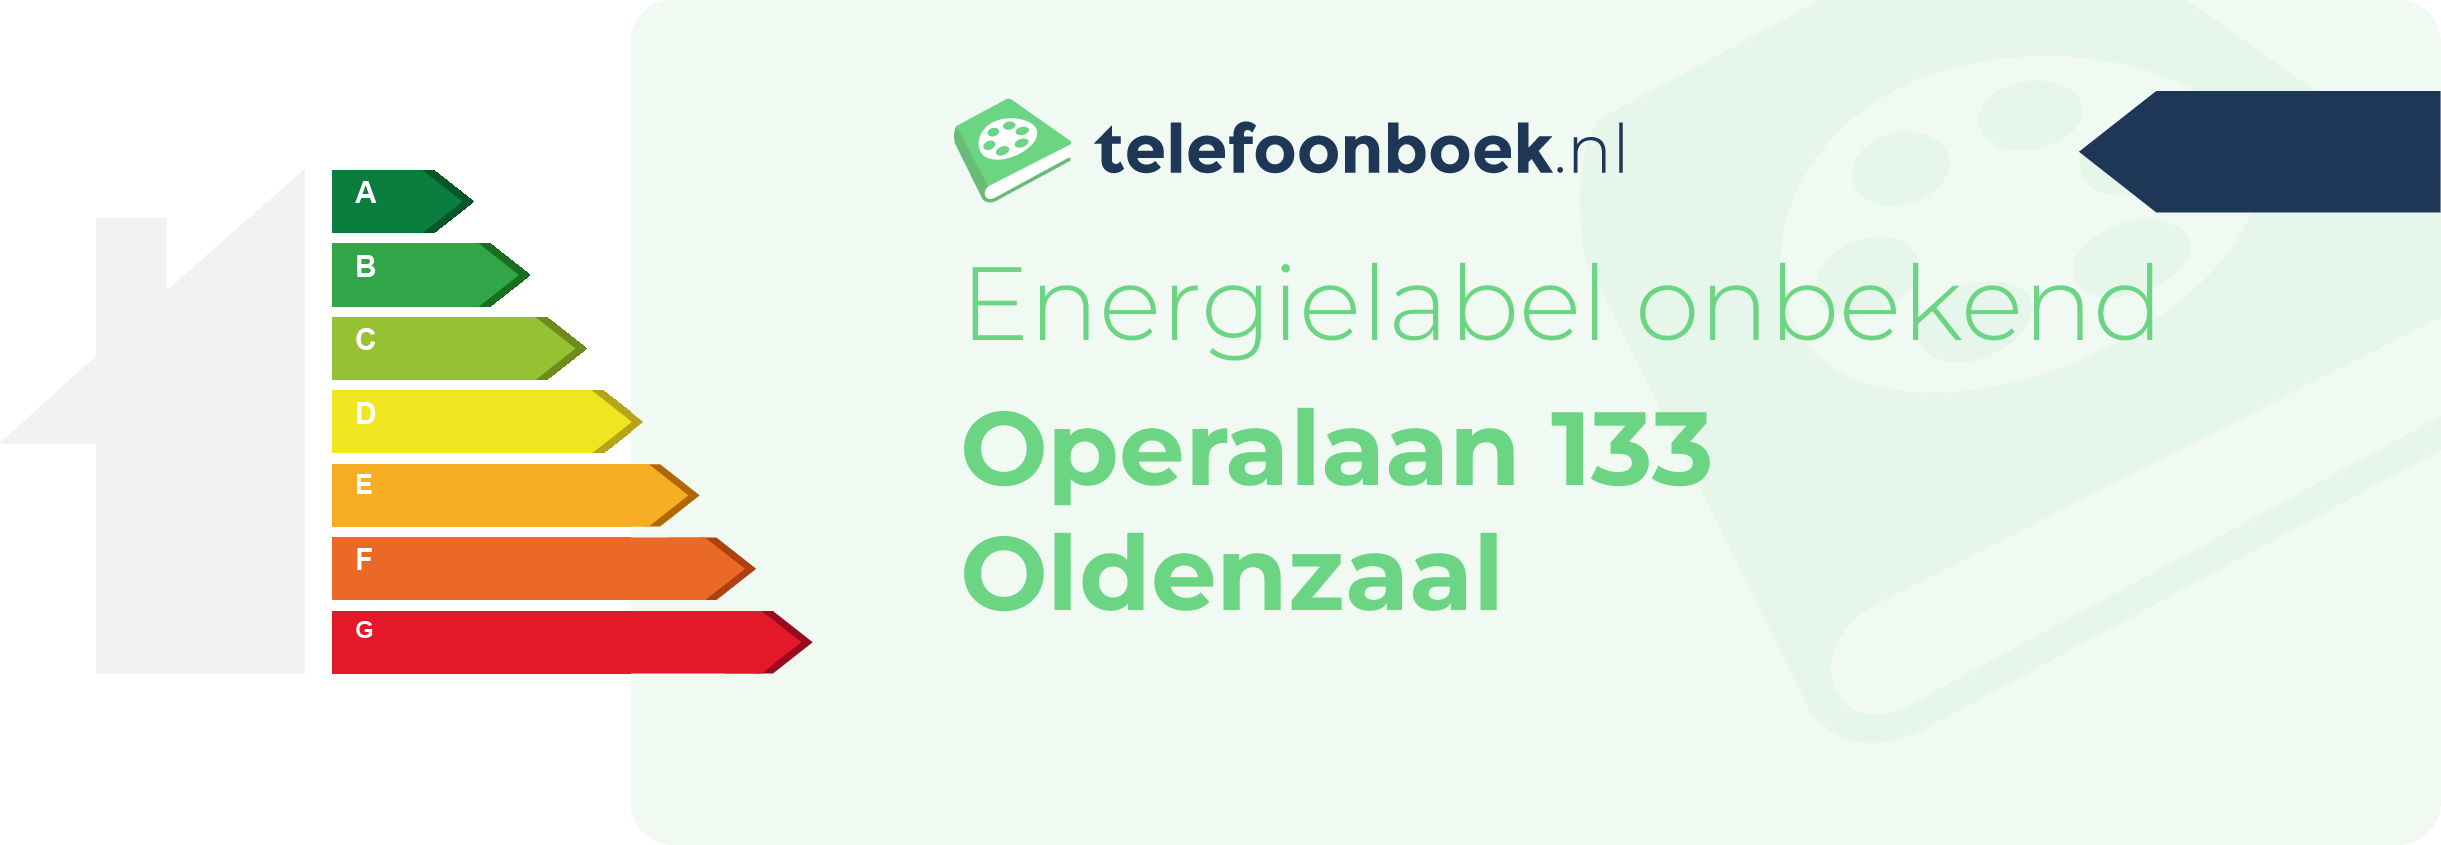 Energielabel Operalaan 133 Oldenzaal